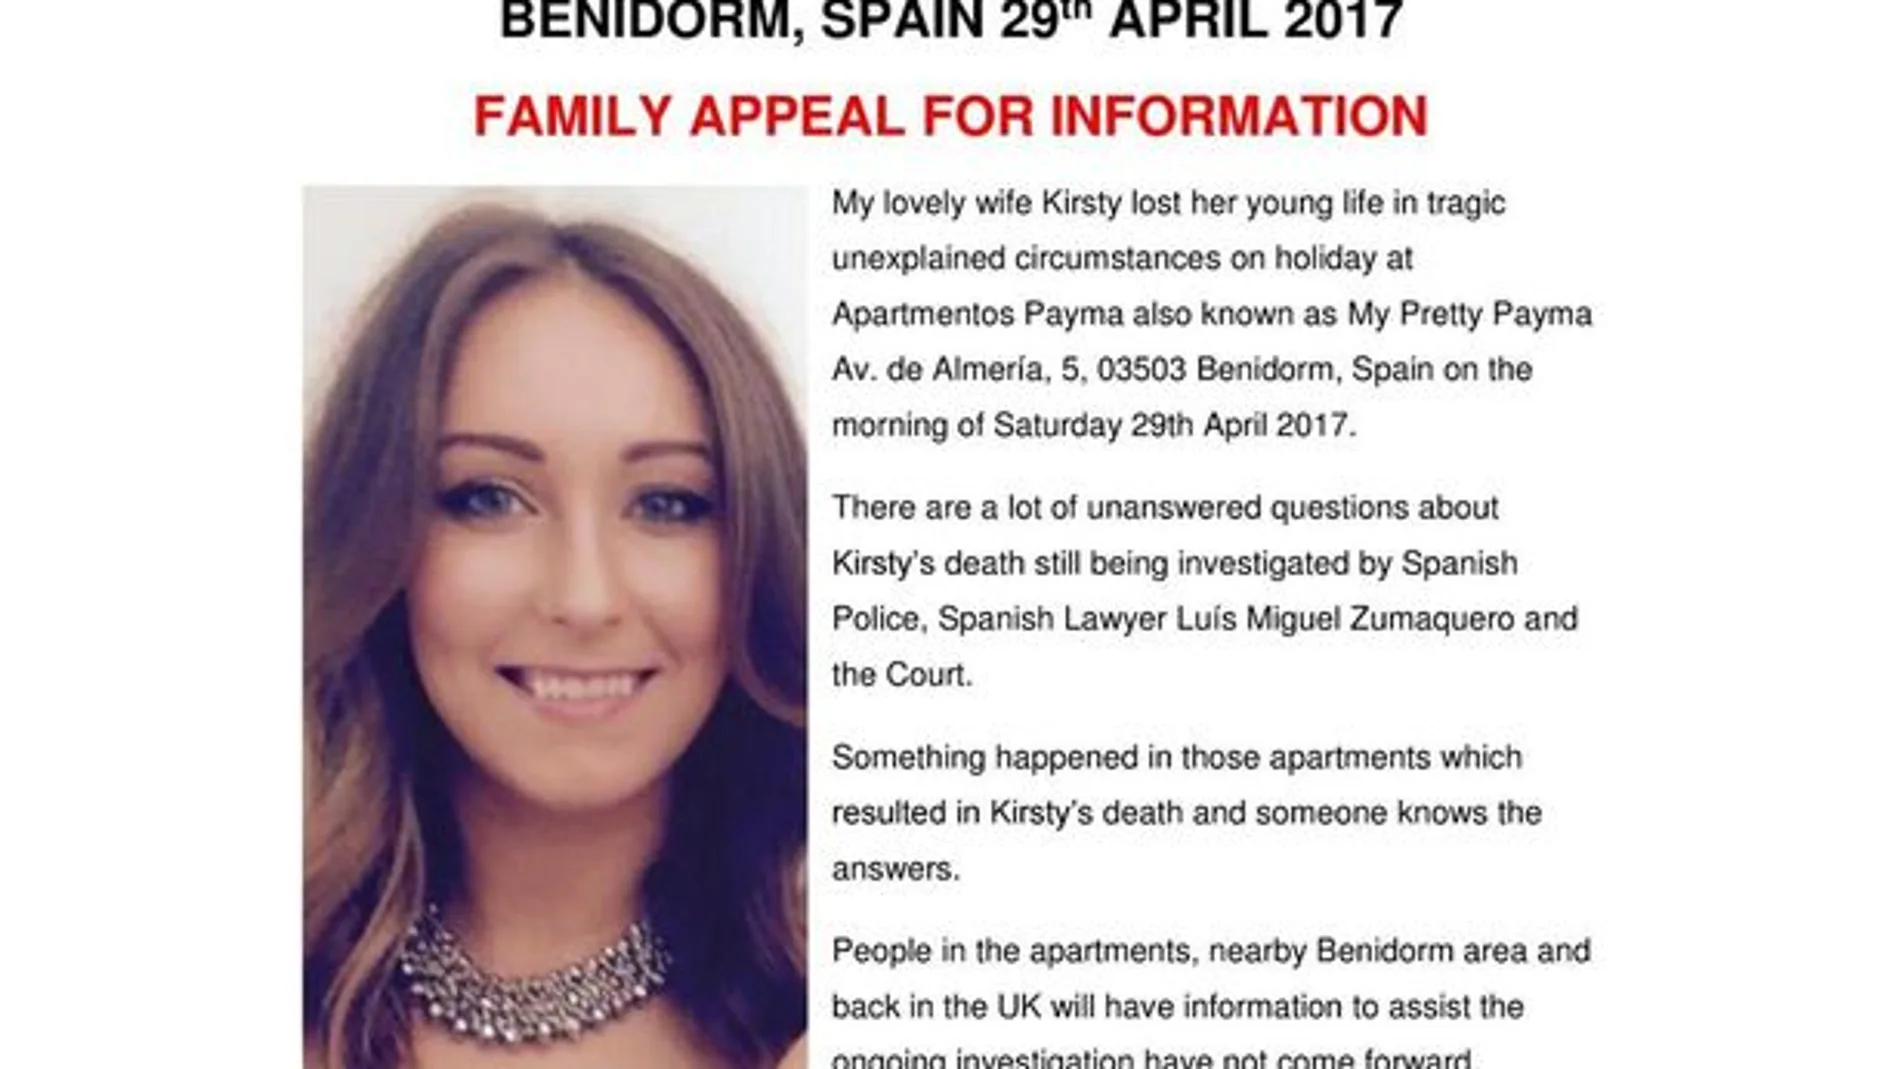 Cartel de la familia de Kirsty para encontrar más datos sobre su muerte